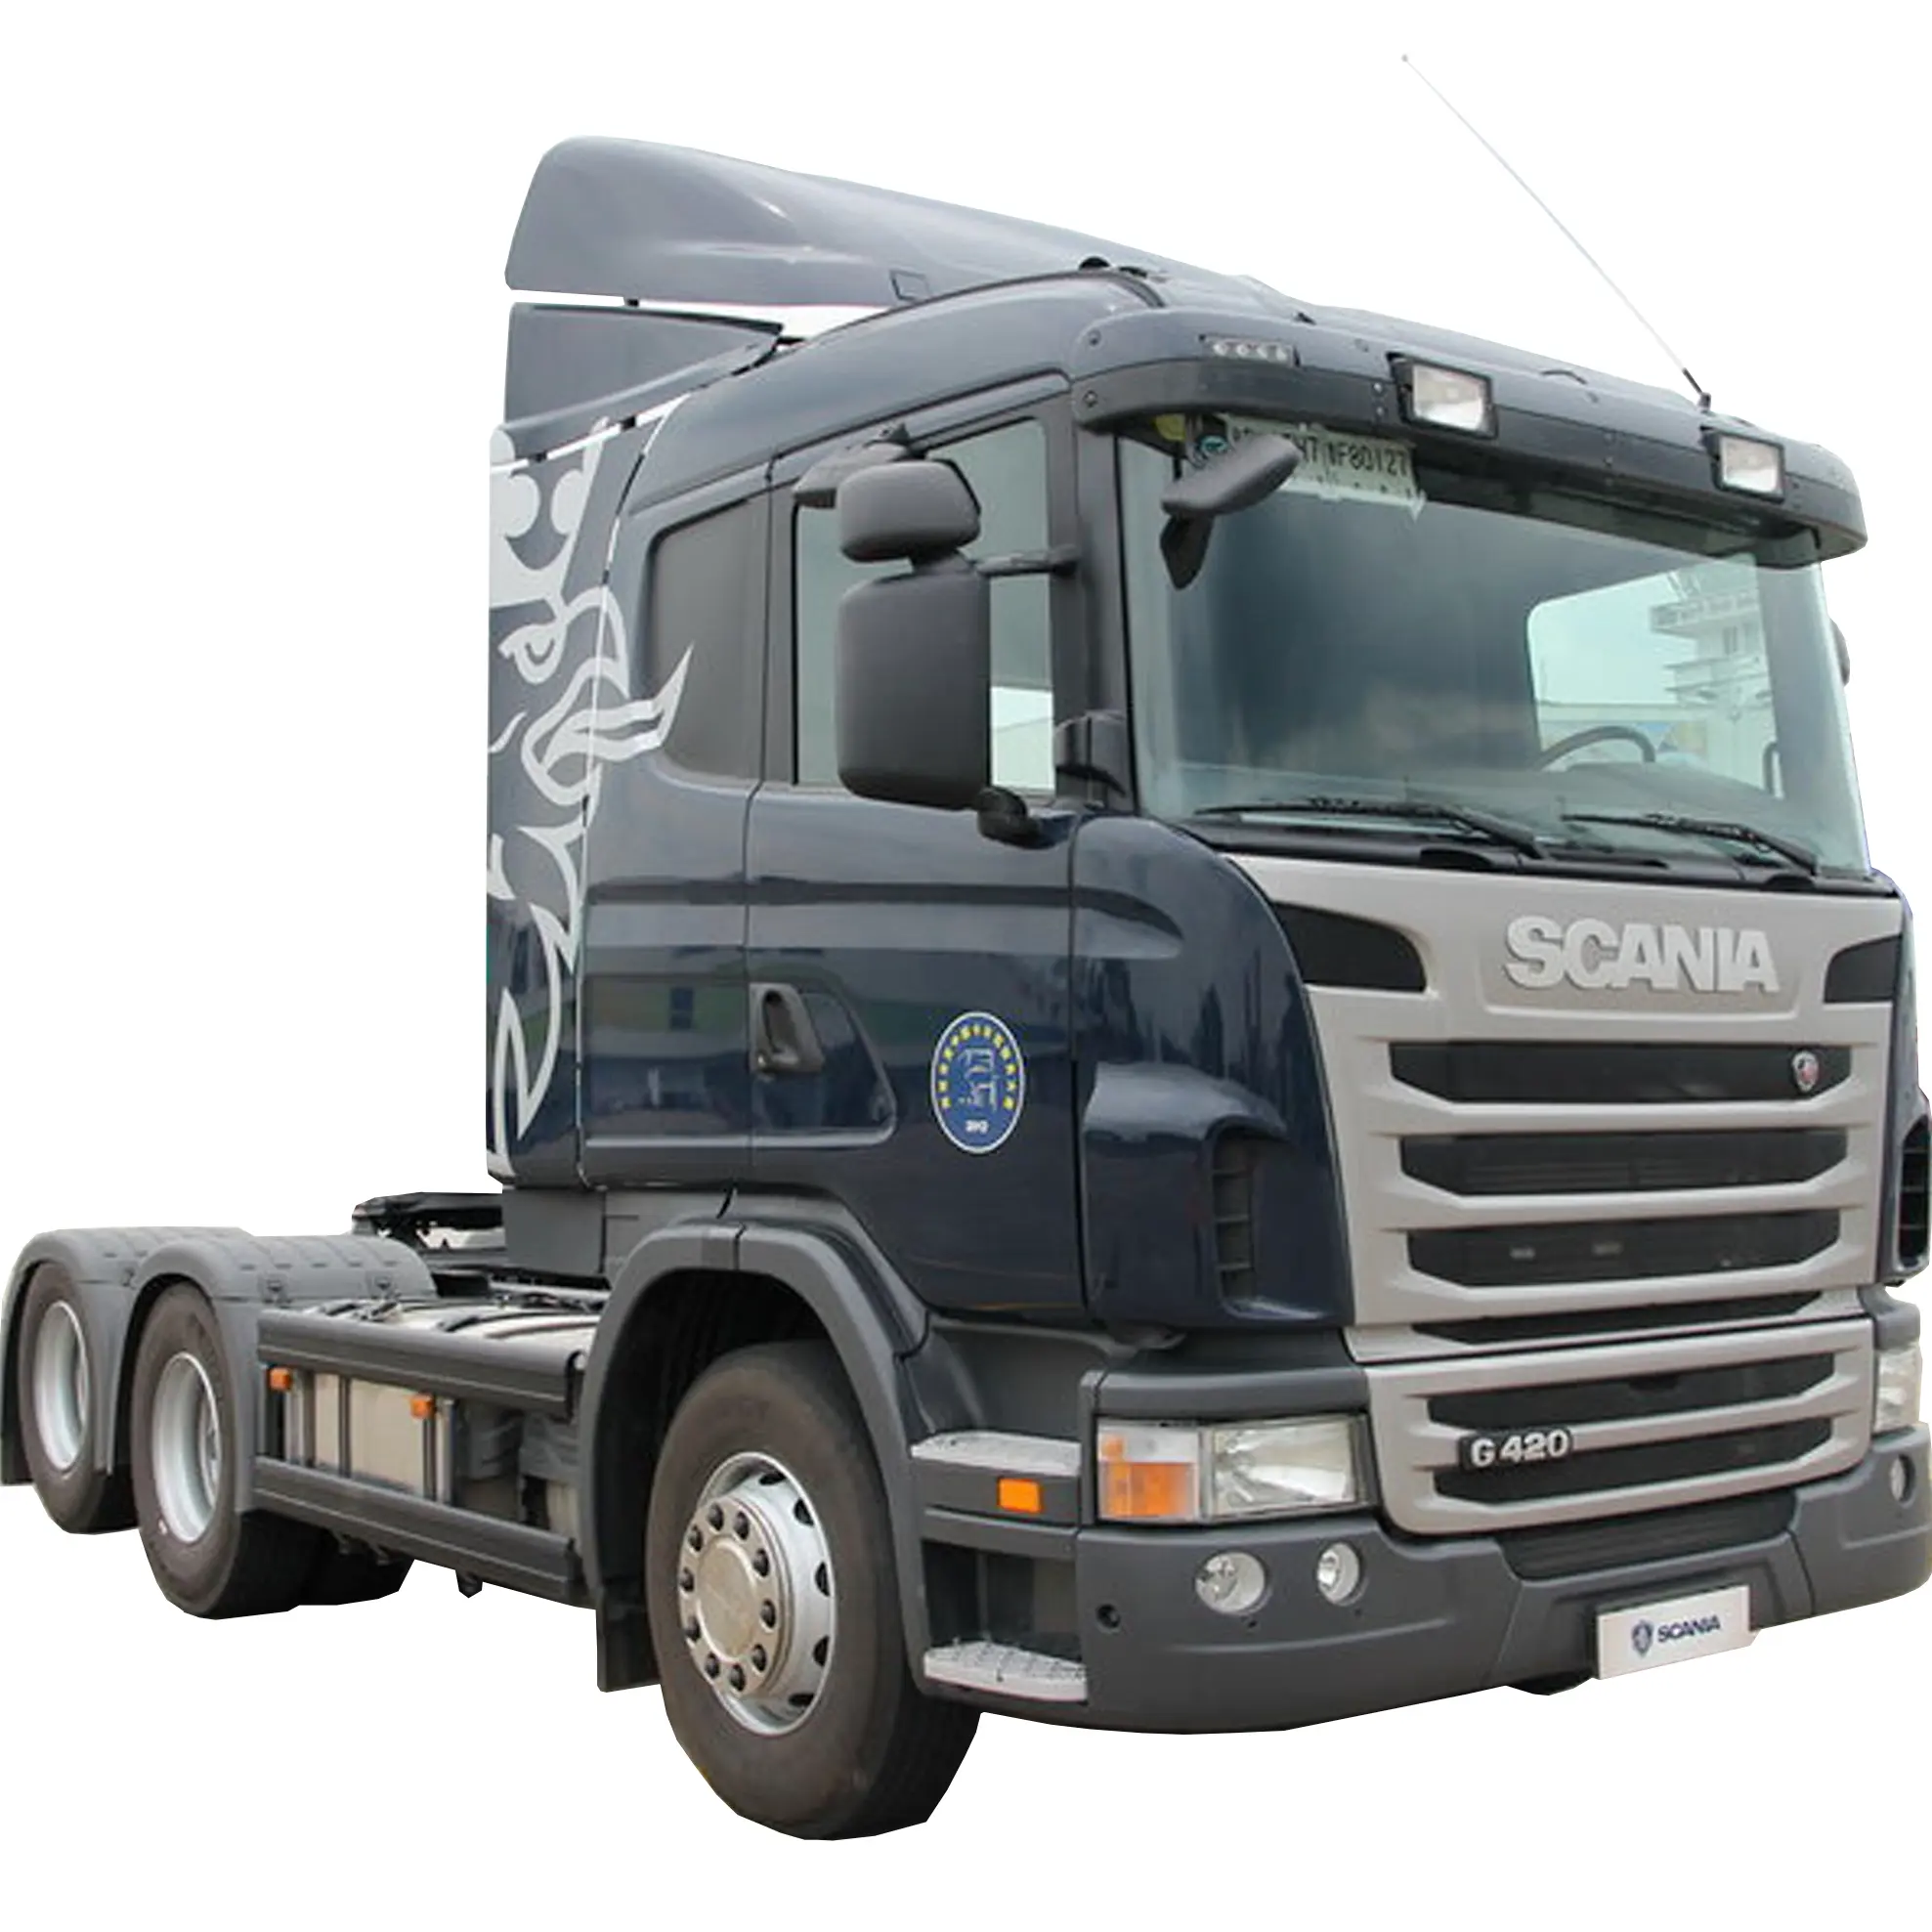 Heißer Verkauf billiger Preis gebrauchter LKW Traktor kopf scania G420 6 x2R 10 Räder spezieller Container-LKW zum Abschleppen